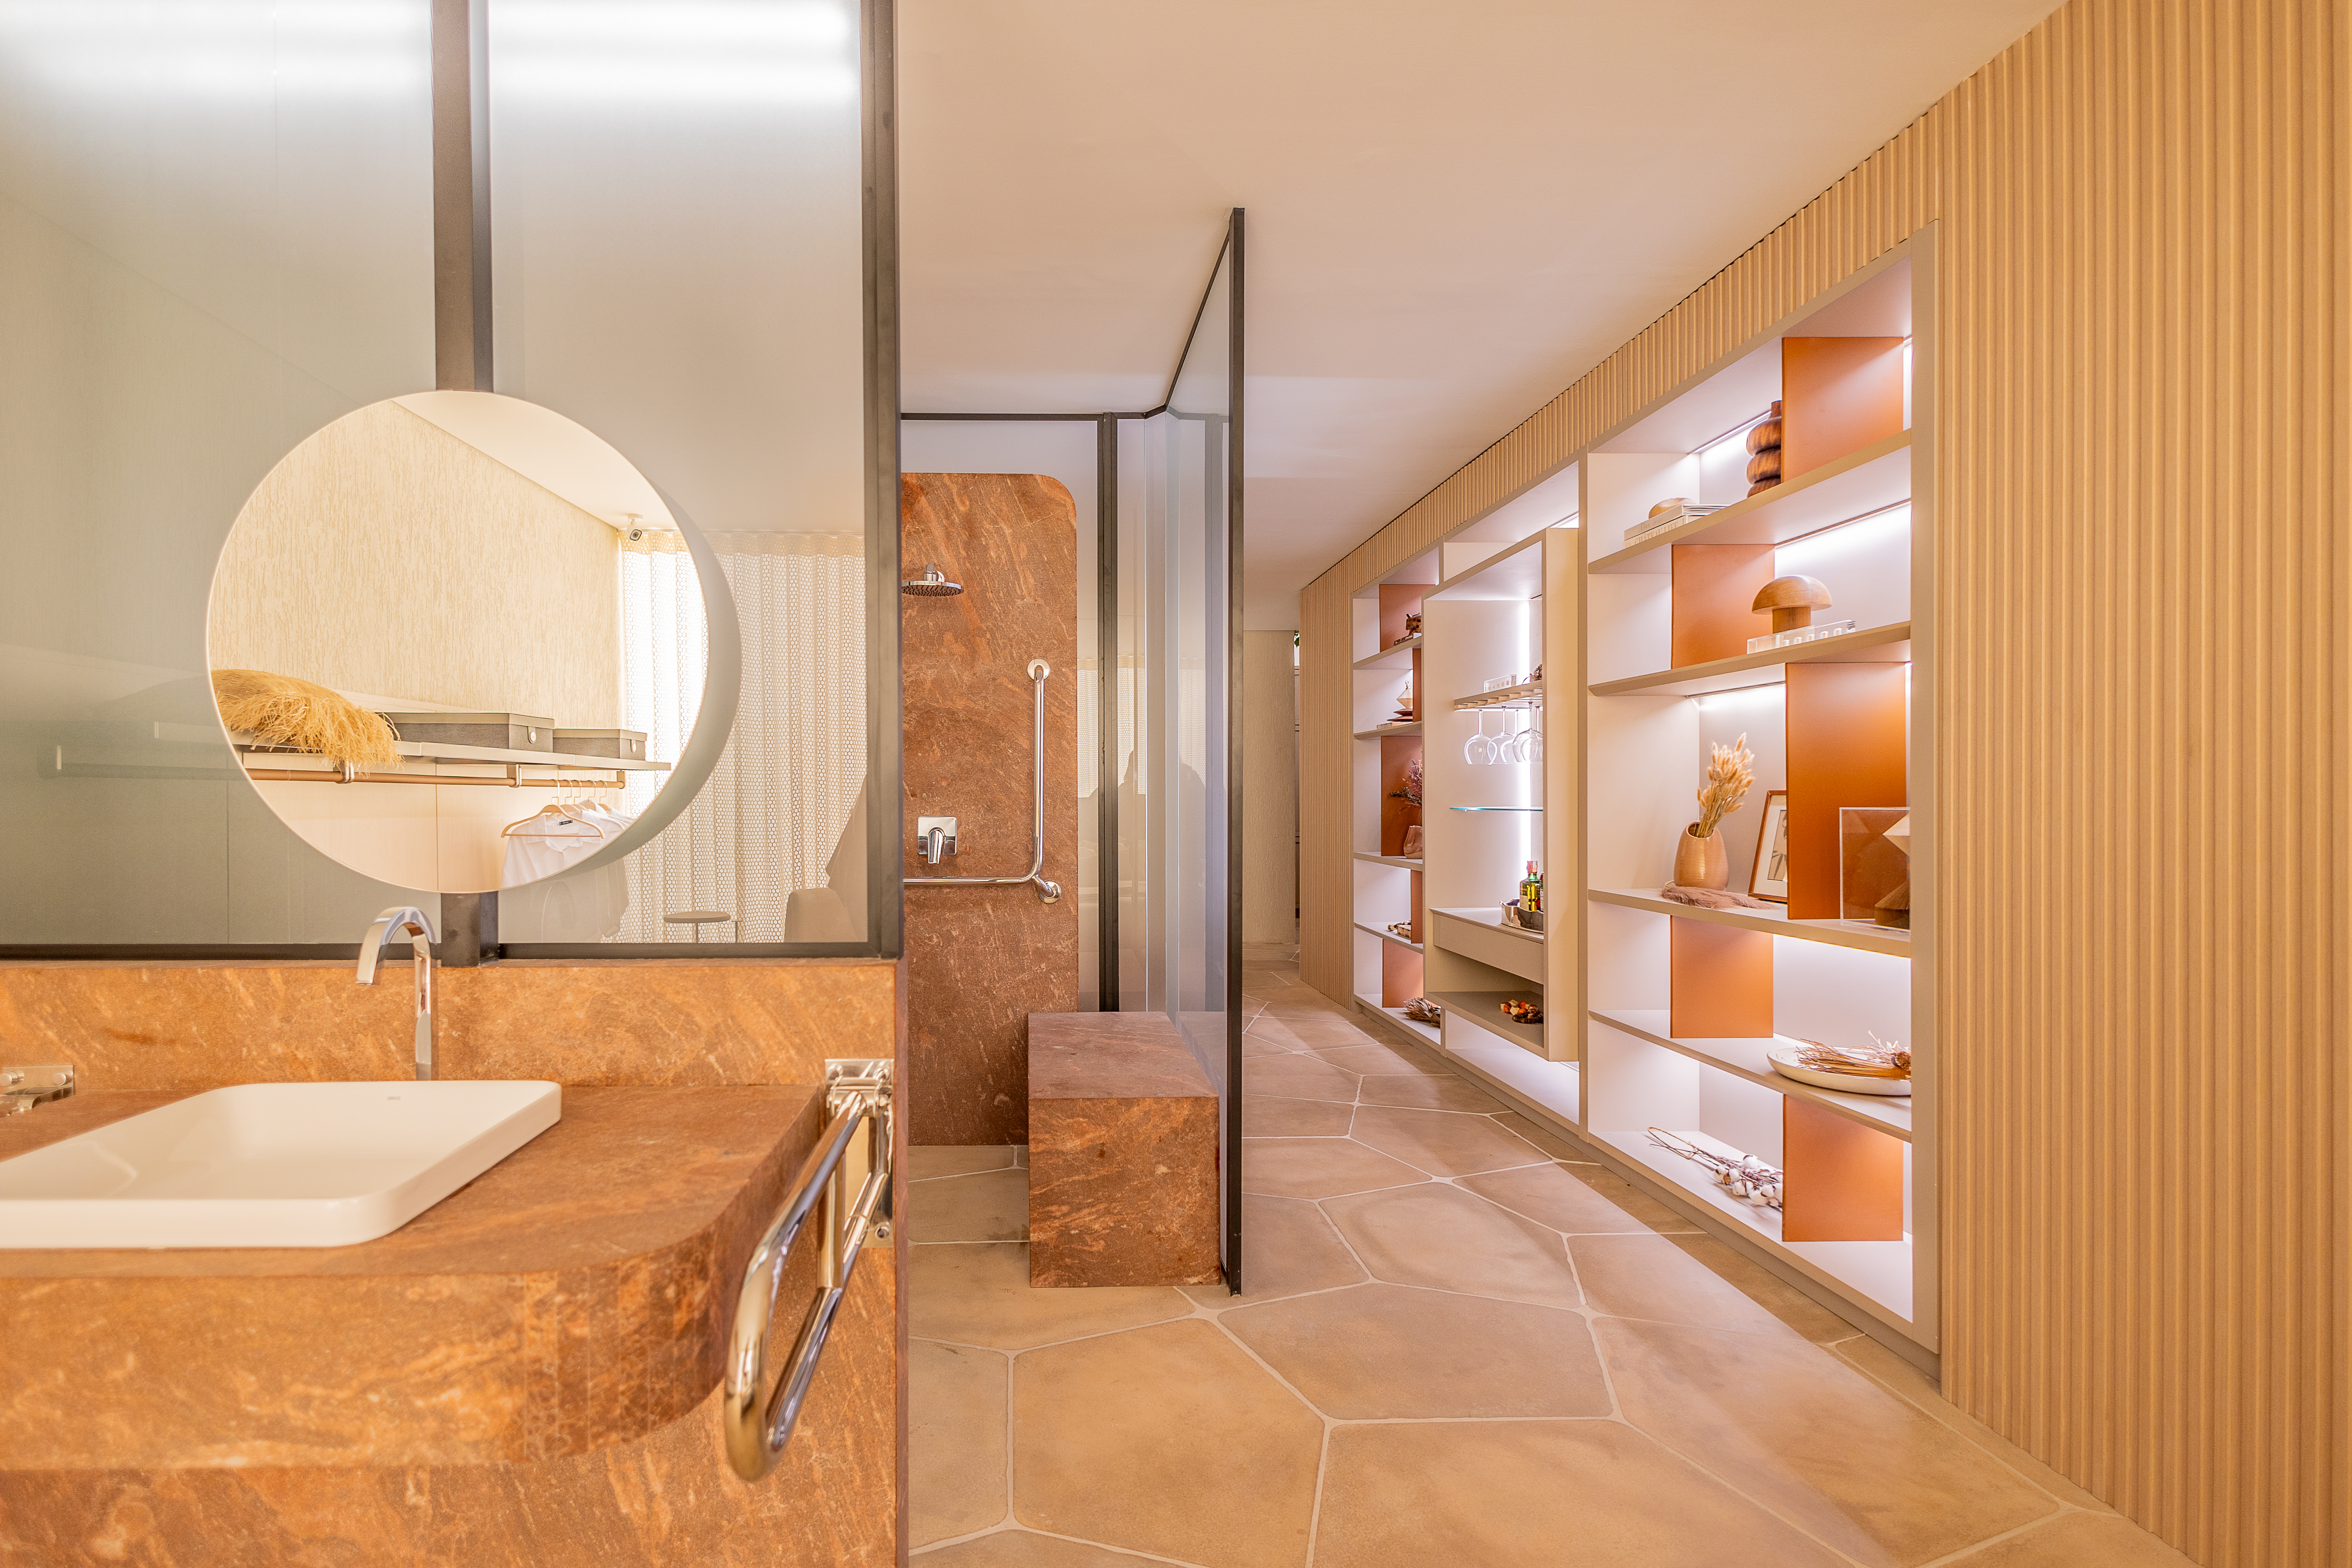 Estúdio de 88 m² traz recursos de acessibilidade de forma elegante e estética. Projeto de ADVP para a CASACOR São Paulo 2024. Na foto, banheiro, espelho redondo.